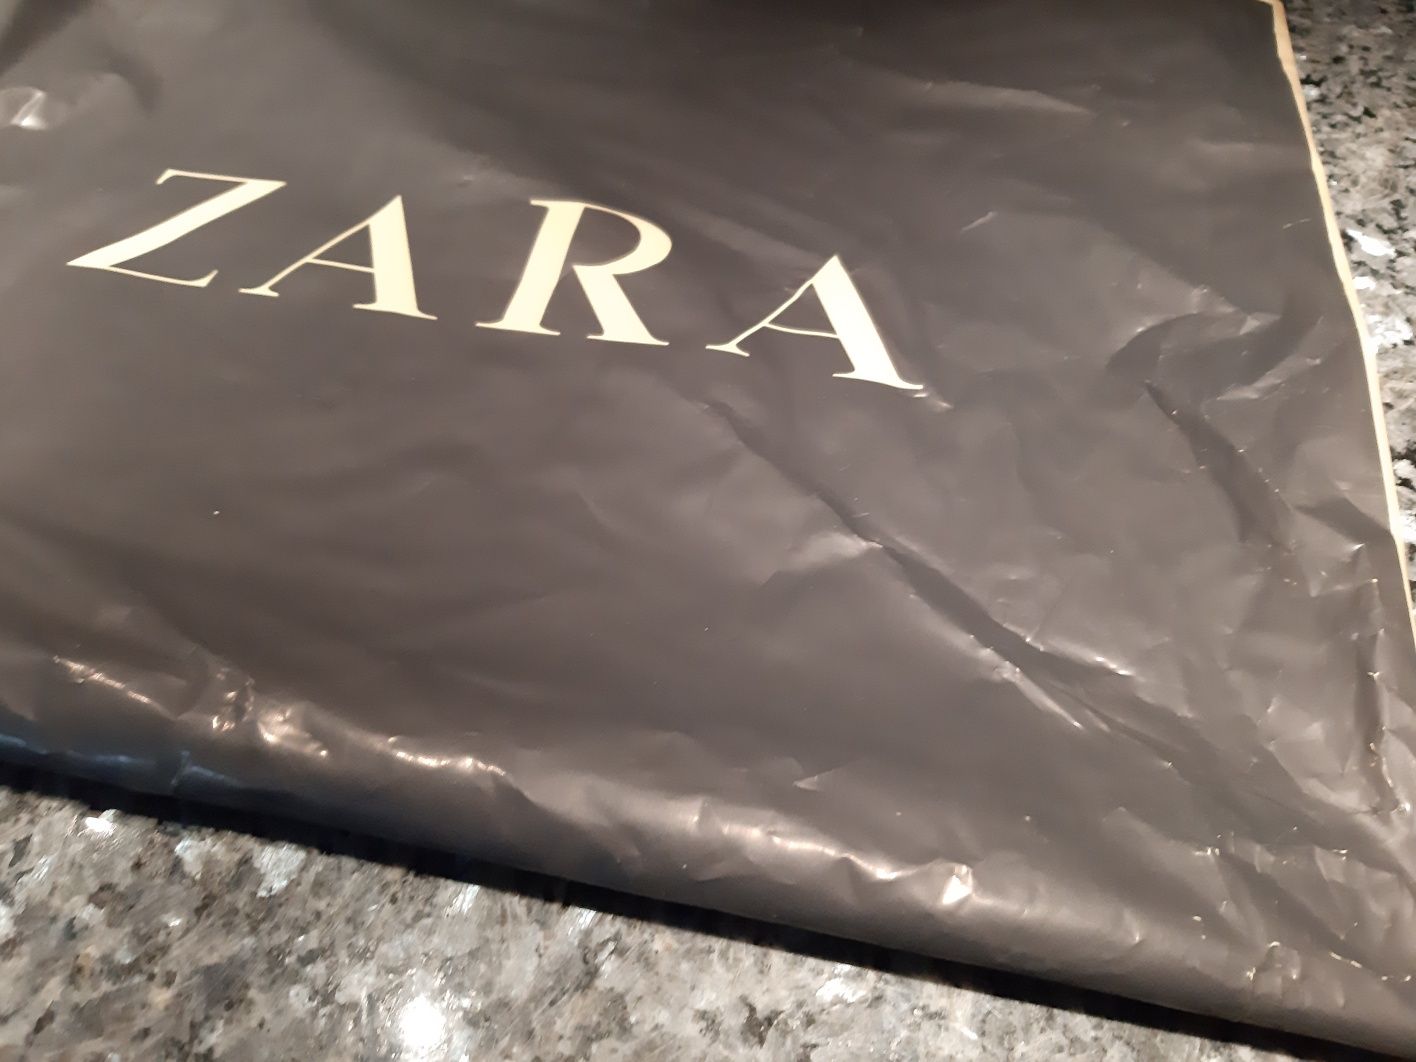 Pokrowiec Zara folia vintage kolekcja na ubrania torebka logo